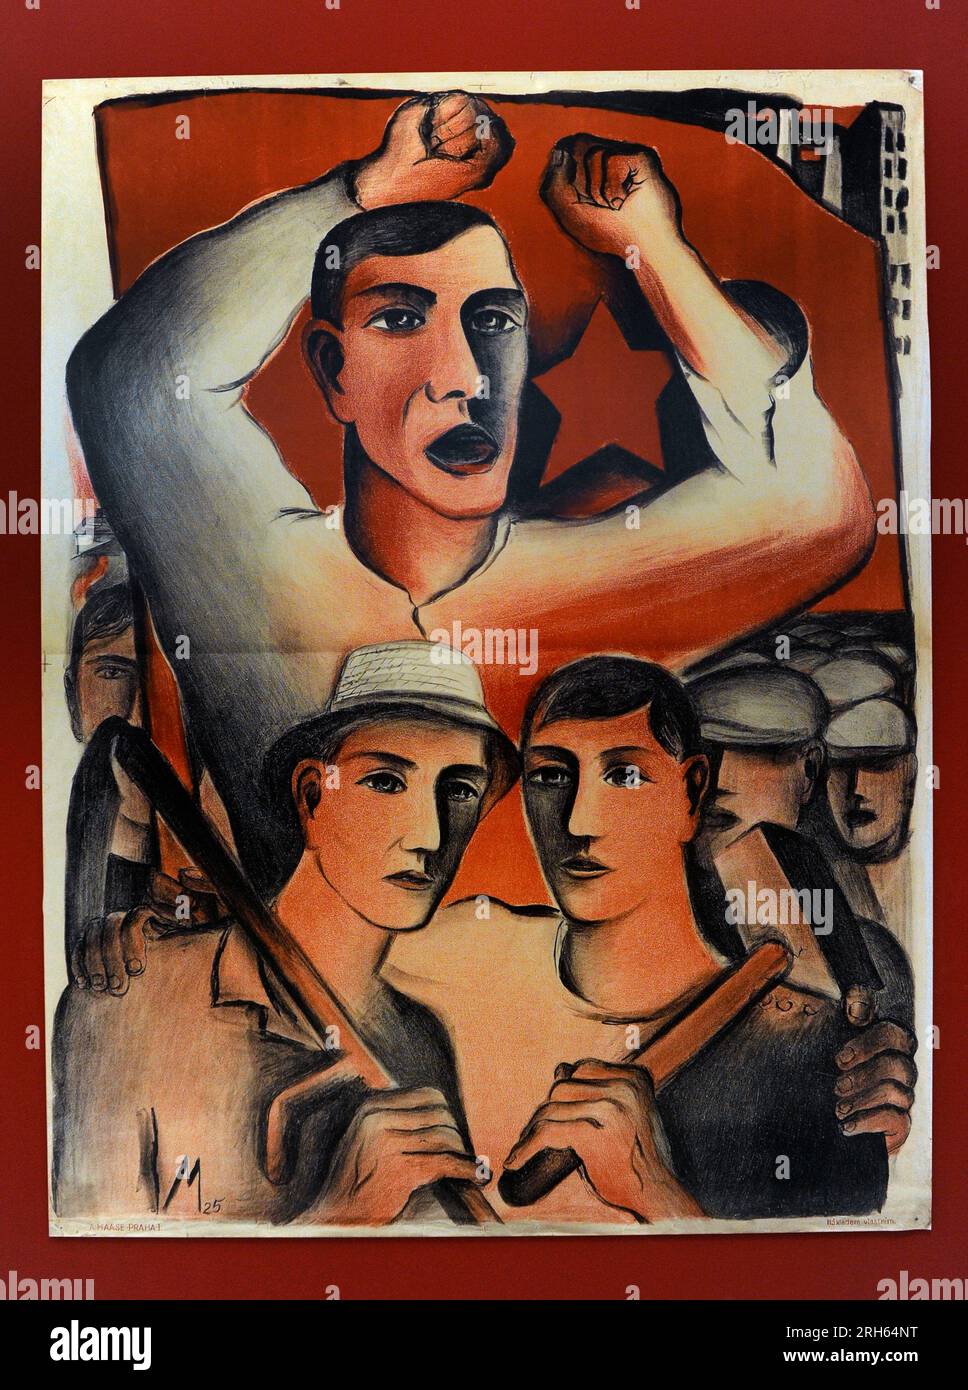 Wahlplakat der Kommunistischen Partei der Tschechoslowakei (KSC), 1925. Facsimilie, Lithograf. Gedruckt von A. Haase, Prag. Nationalgalerie, Prag, Tschechische Republik. Stockfoto